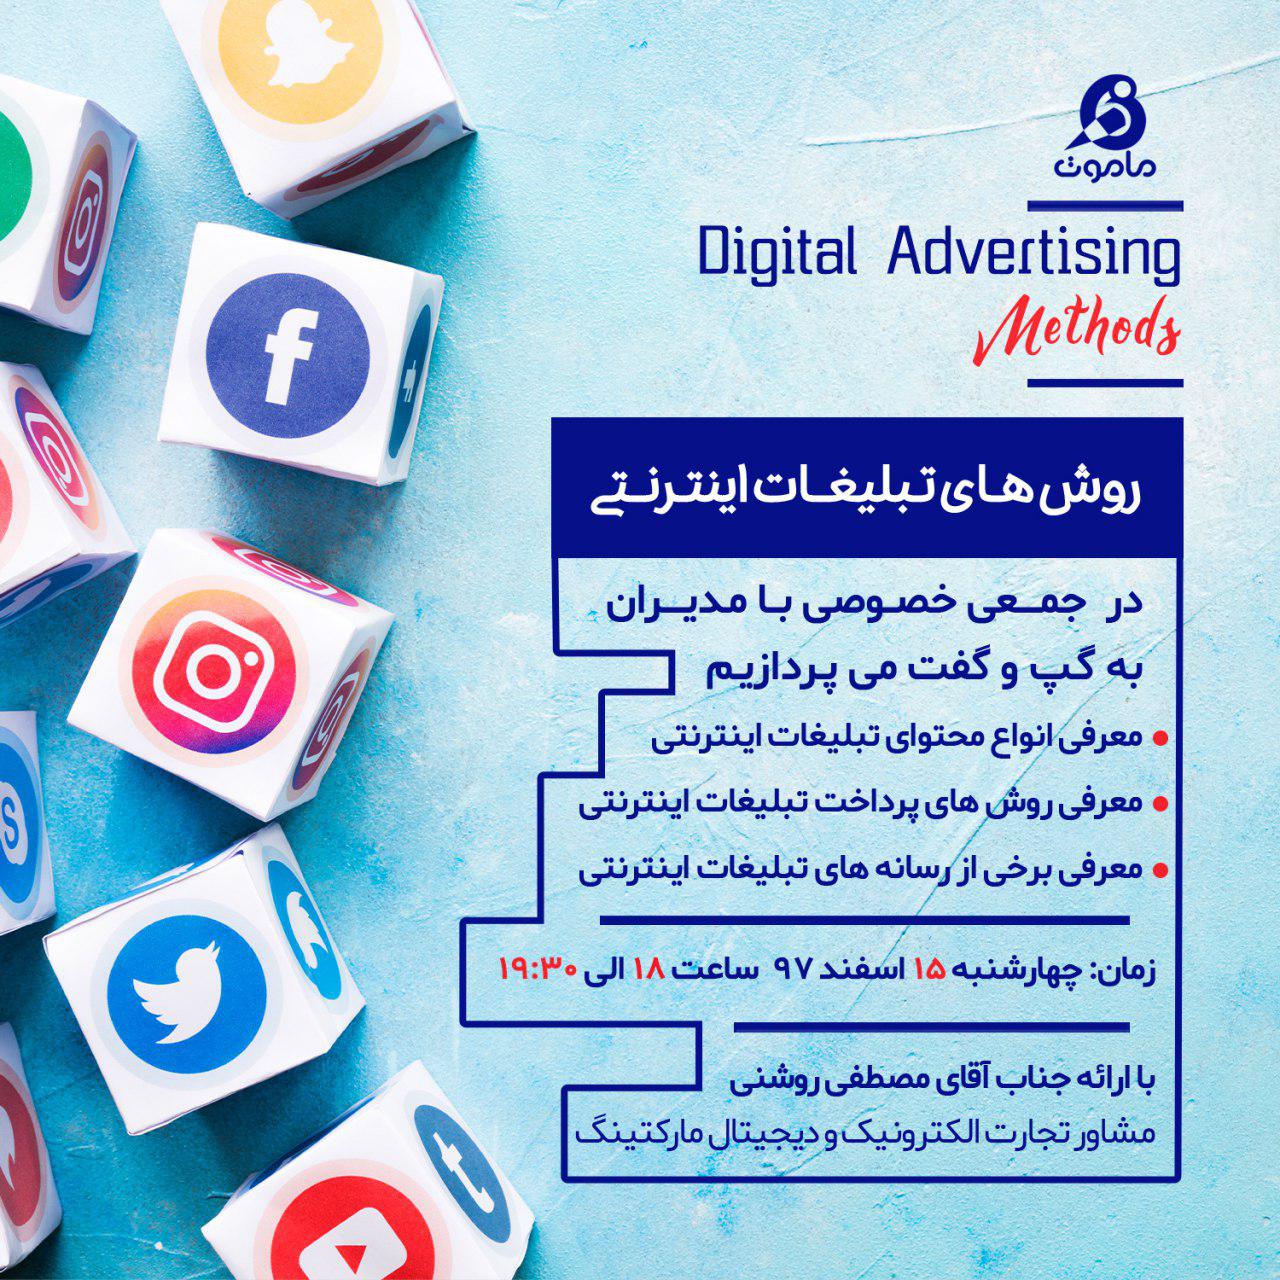 تبلیغات اینترنتی در مشهد